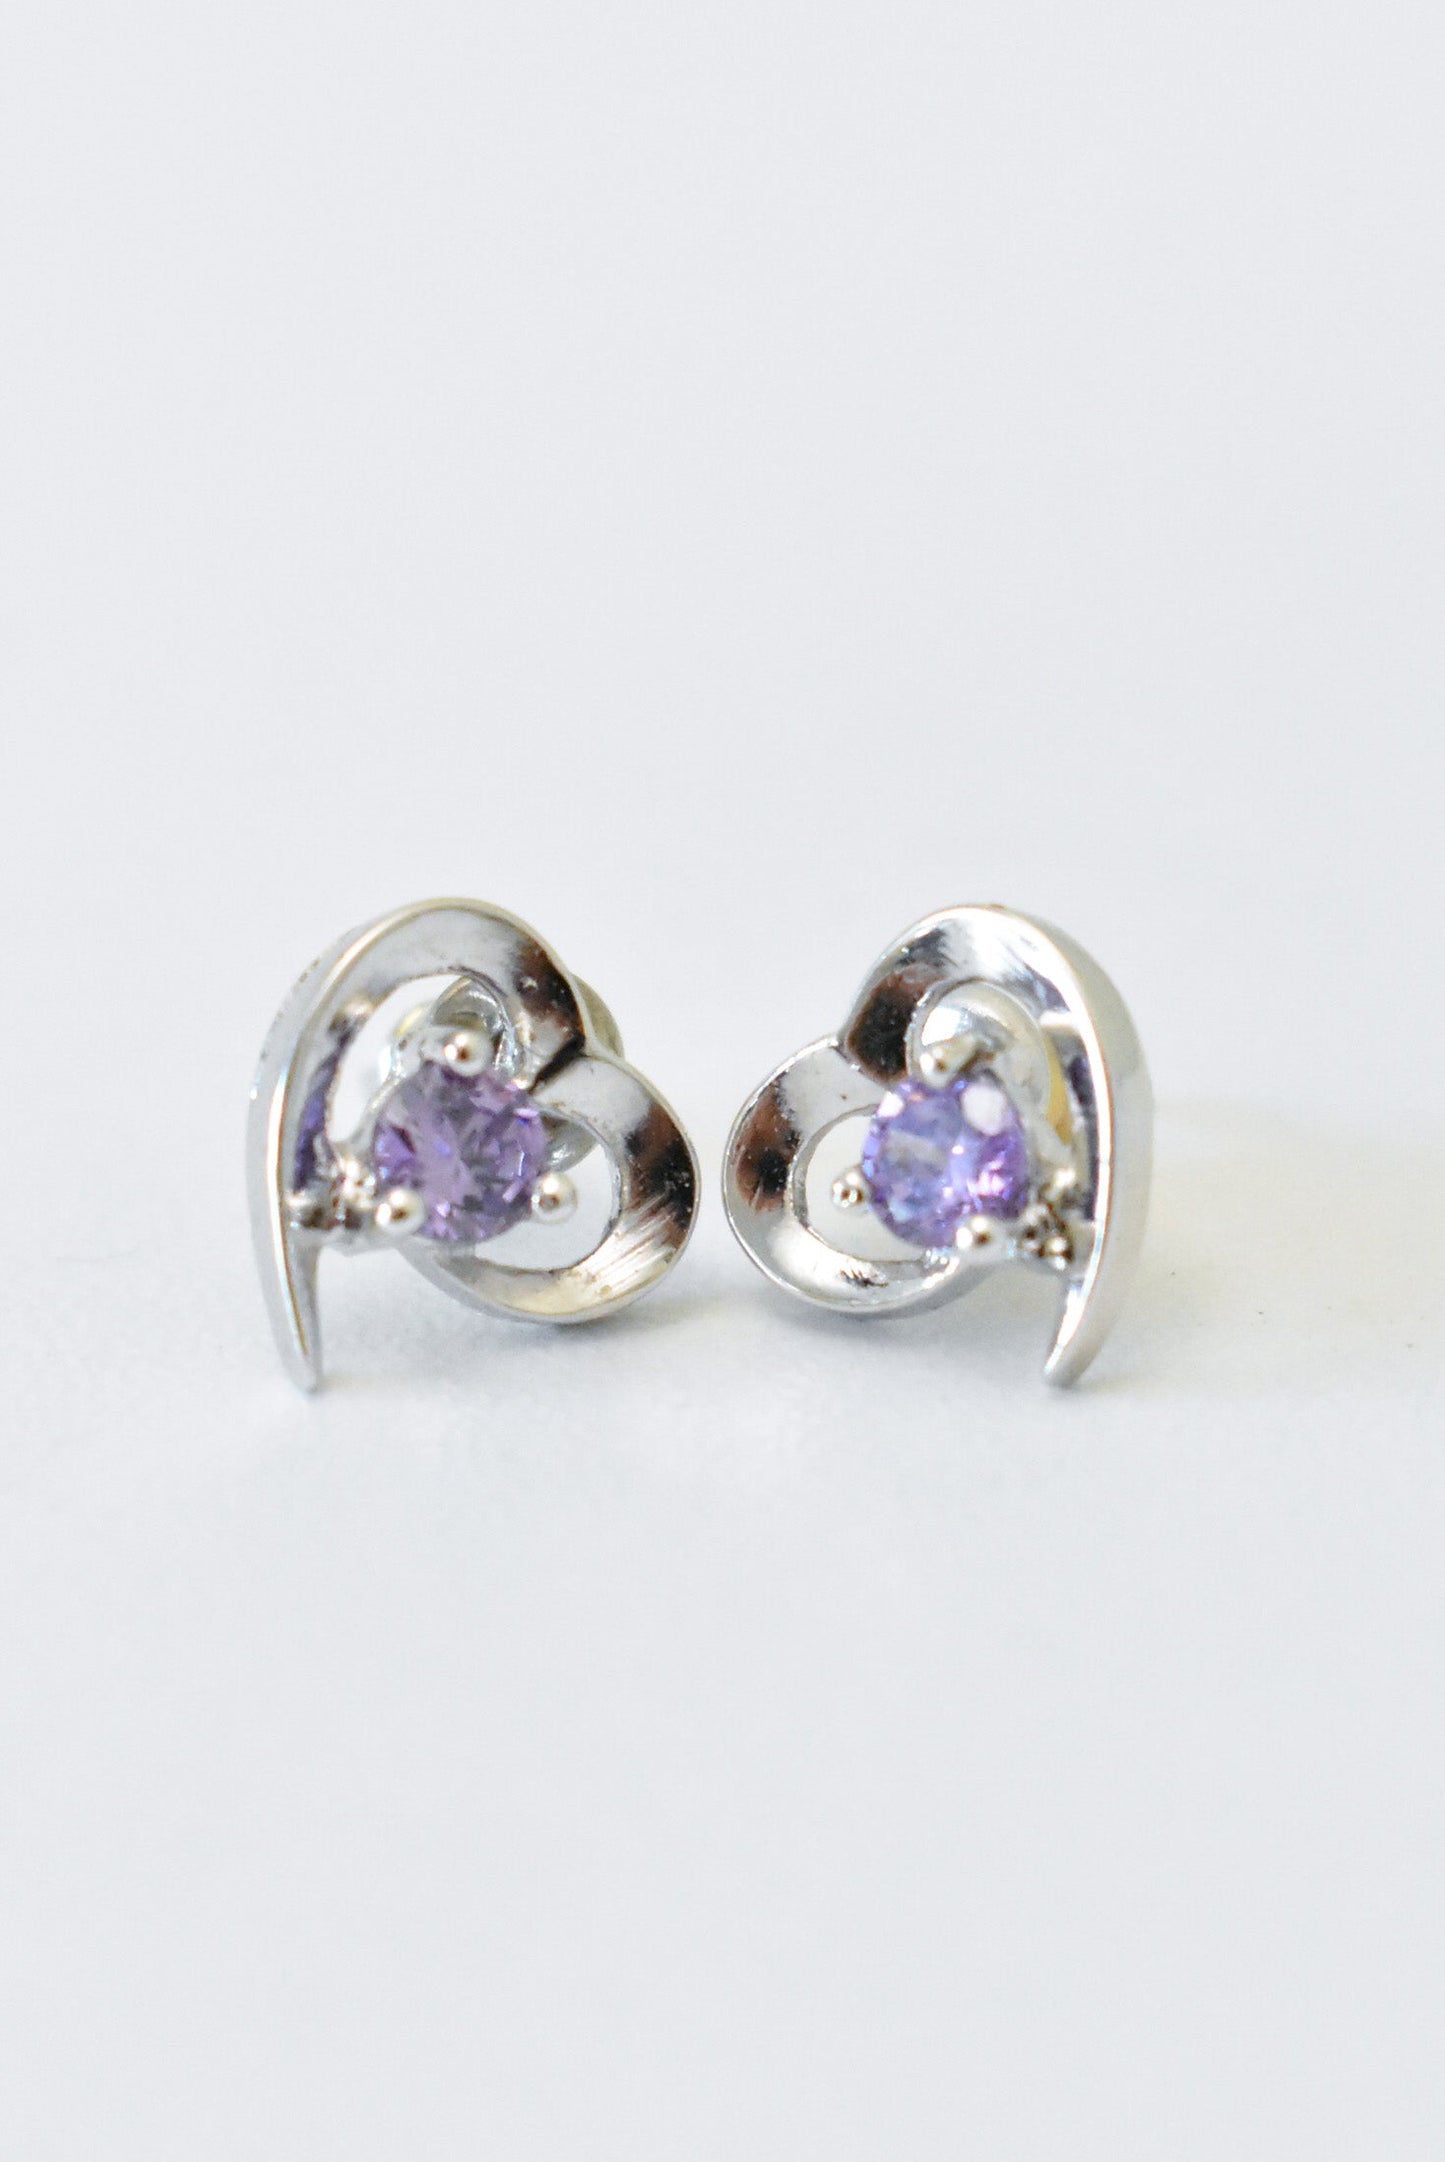 Silver heart earrings with purple gemstones